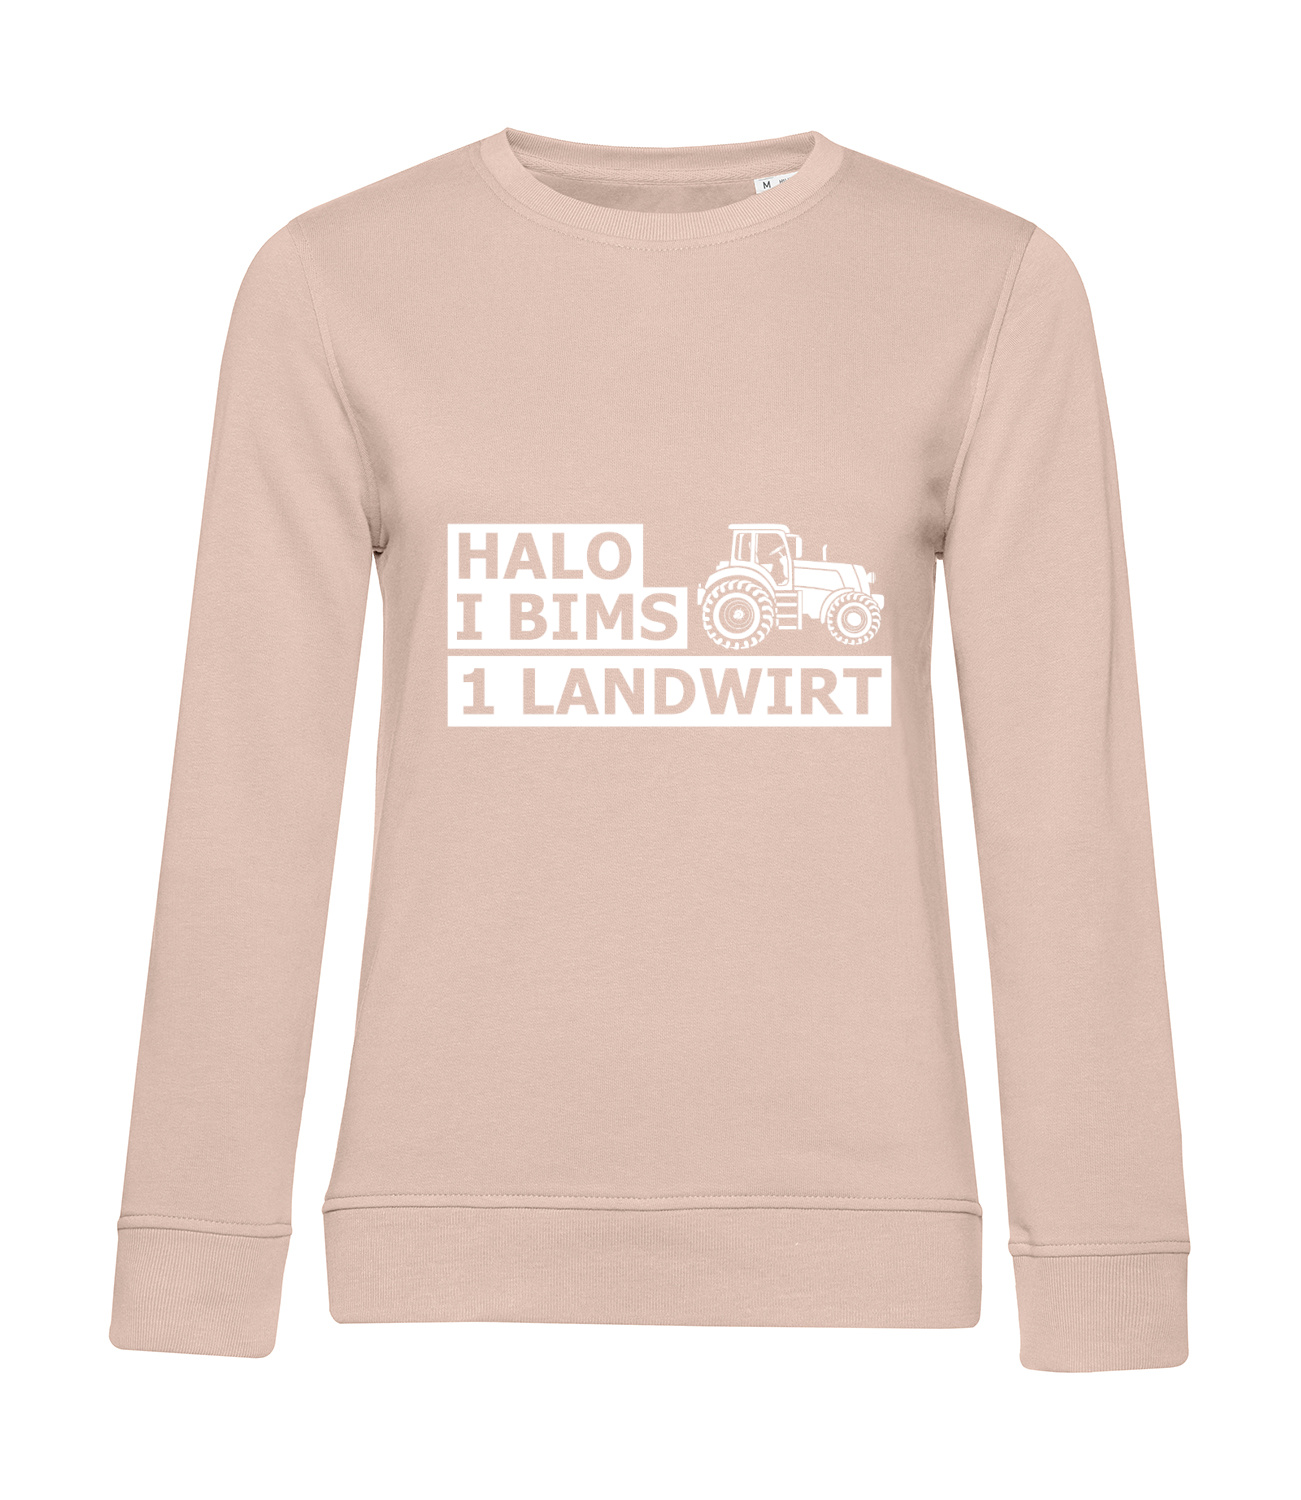 Nachhaltiges Sweatshirt Damen Landwirt - Halo I bims 1 Landwirt